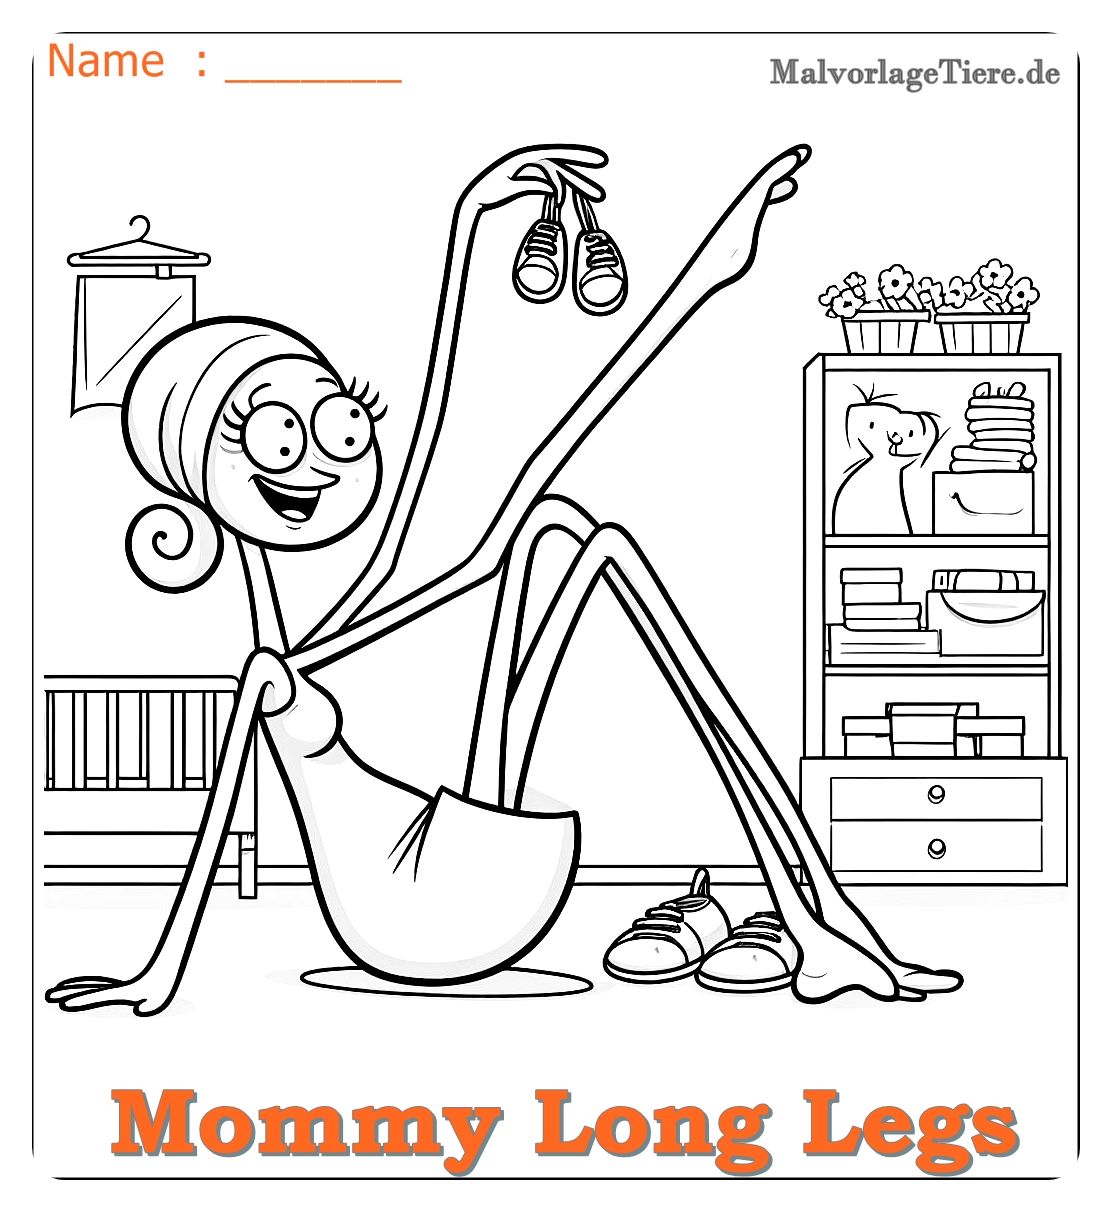 mommy long legs ausmalbilder 05 by malvorlagetiere.de